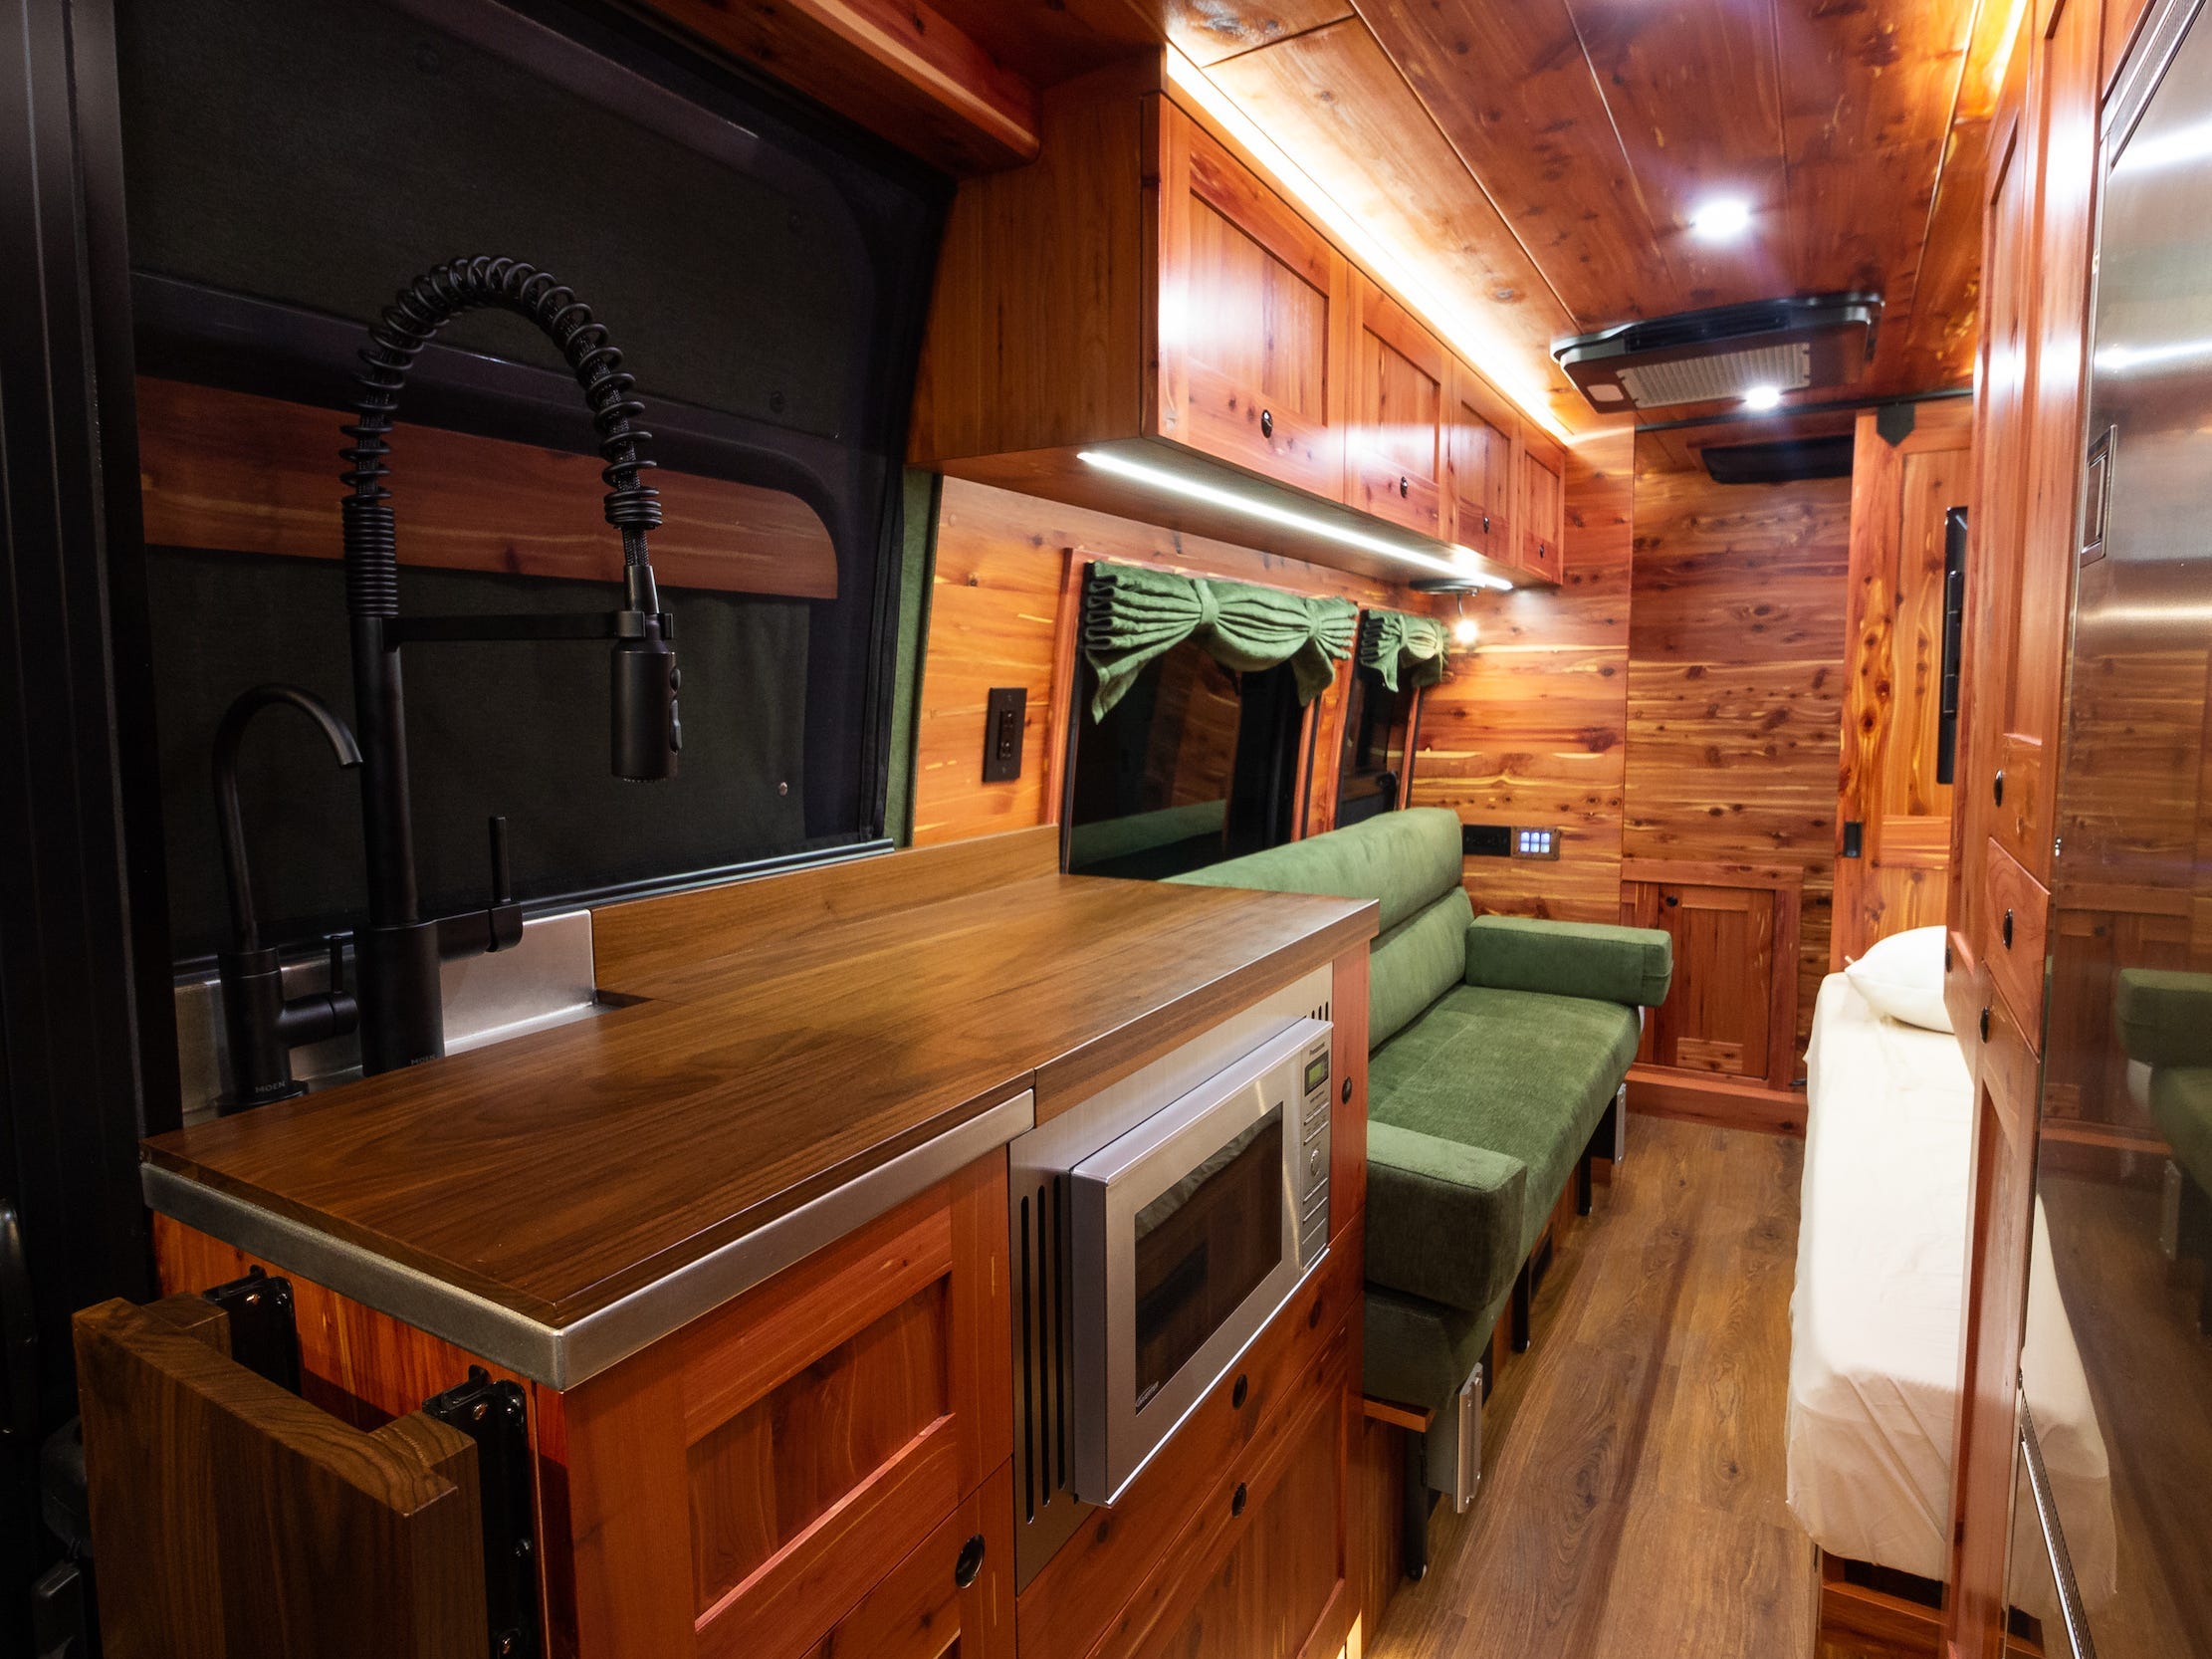 Ein weiter Blick in den Innenraum des Vans zeigt Sitzgelegenheiten, Küche.  Der Innenraum ist mit dunklem Holz ausgekleidet.